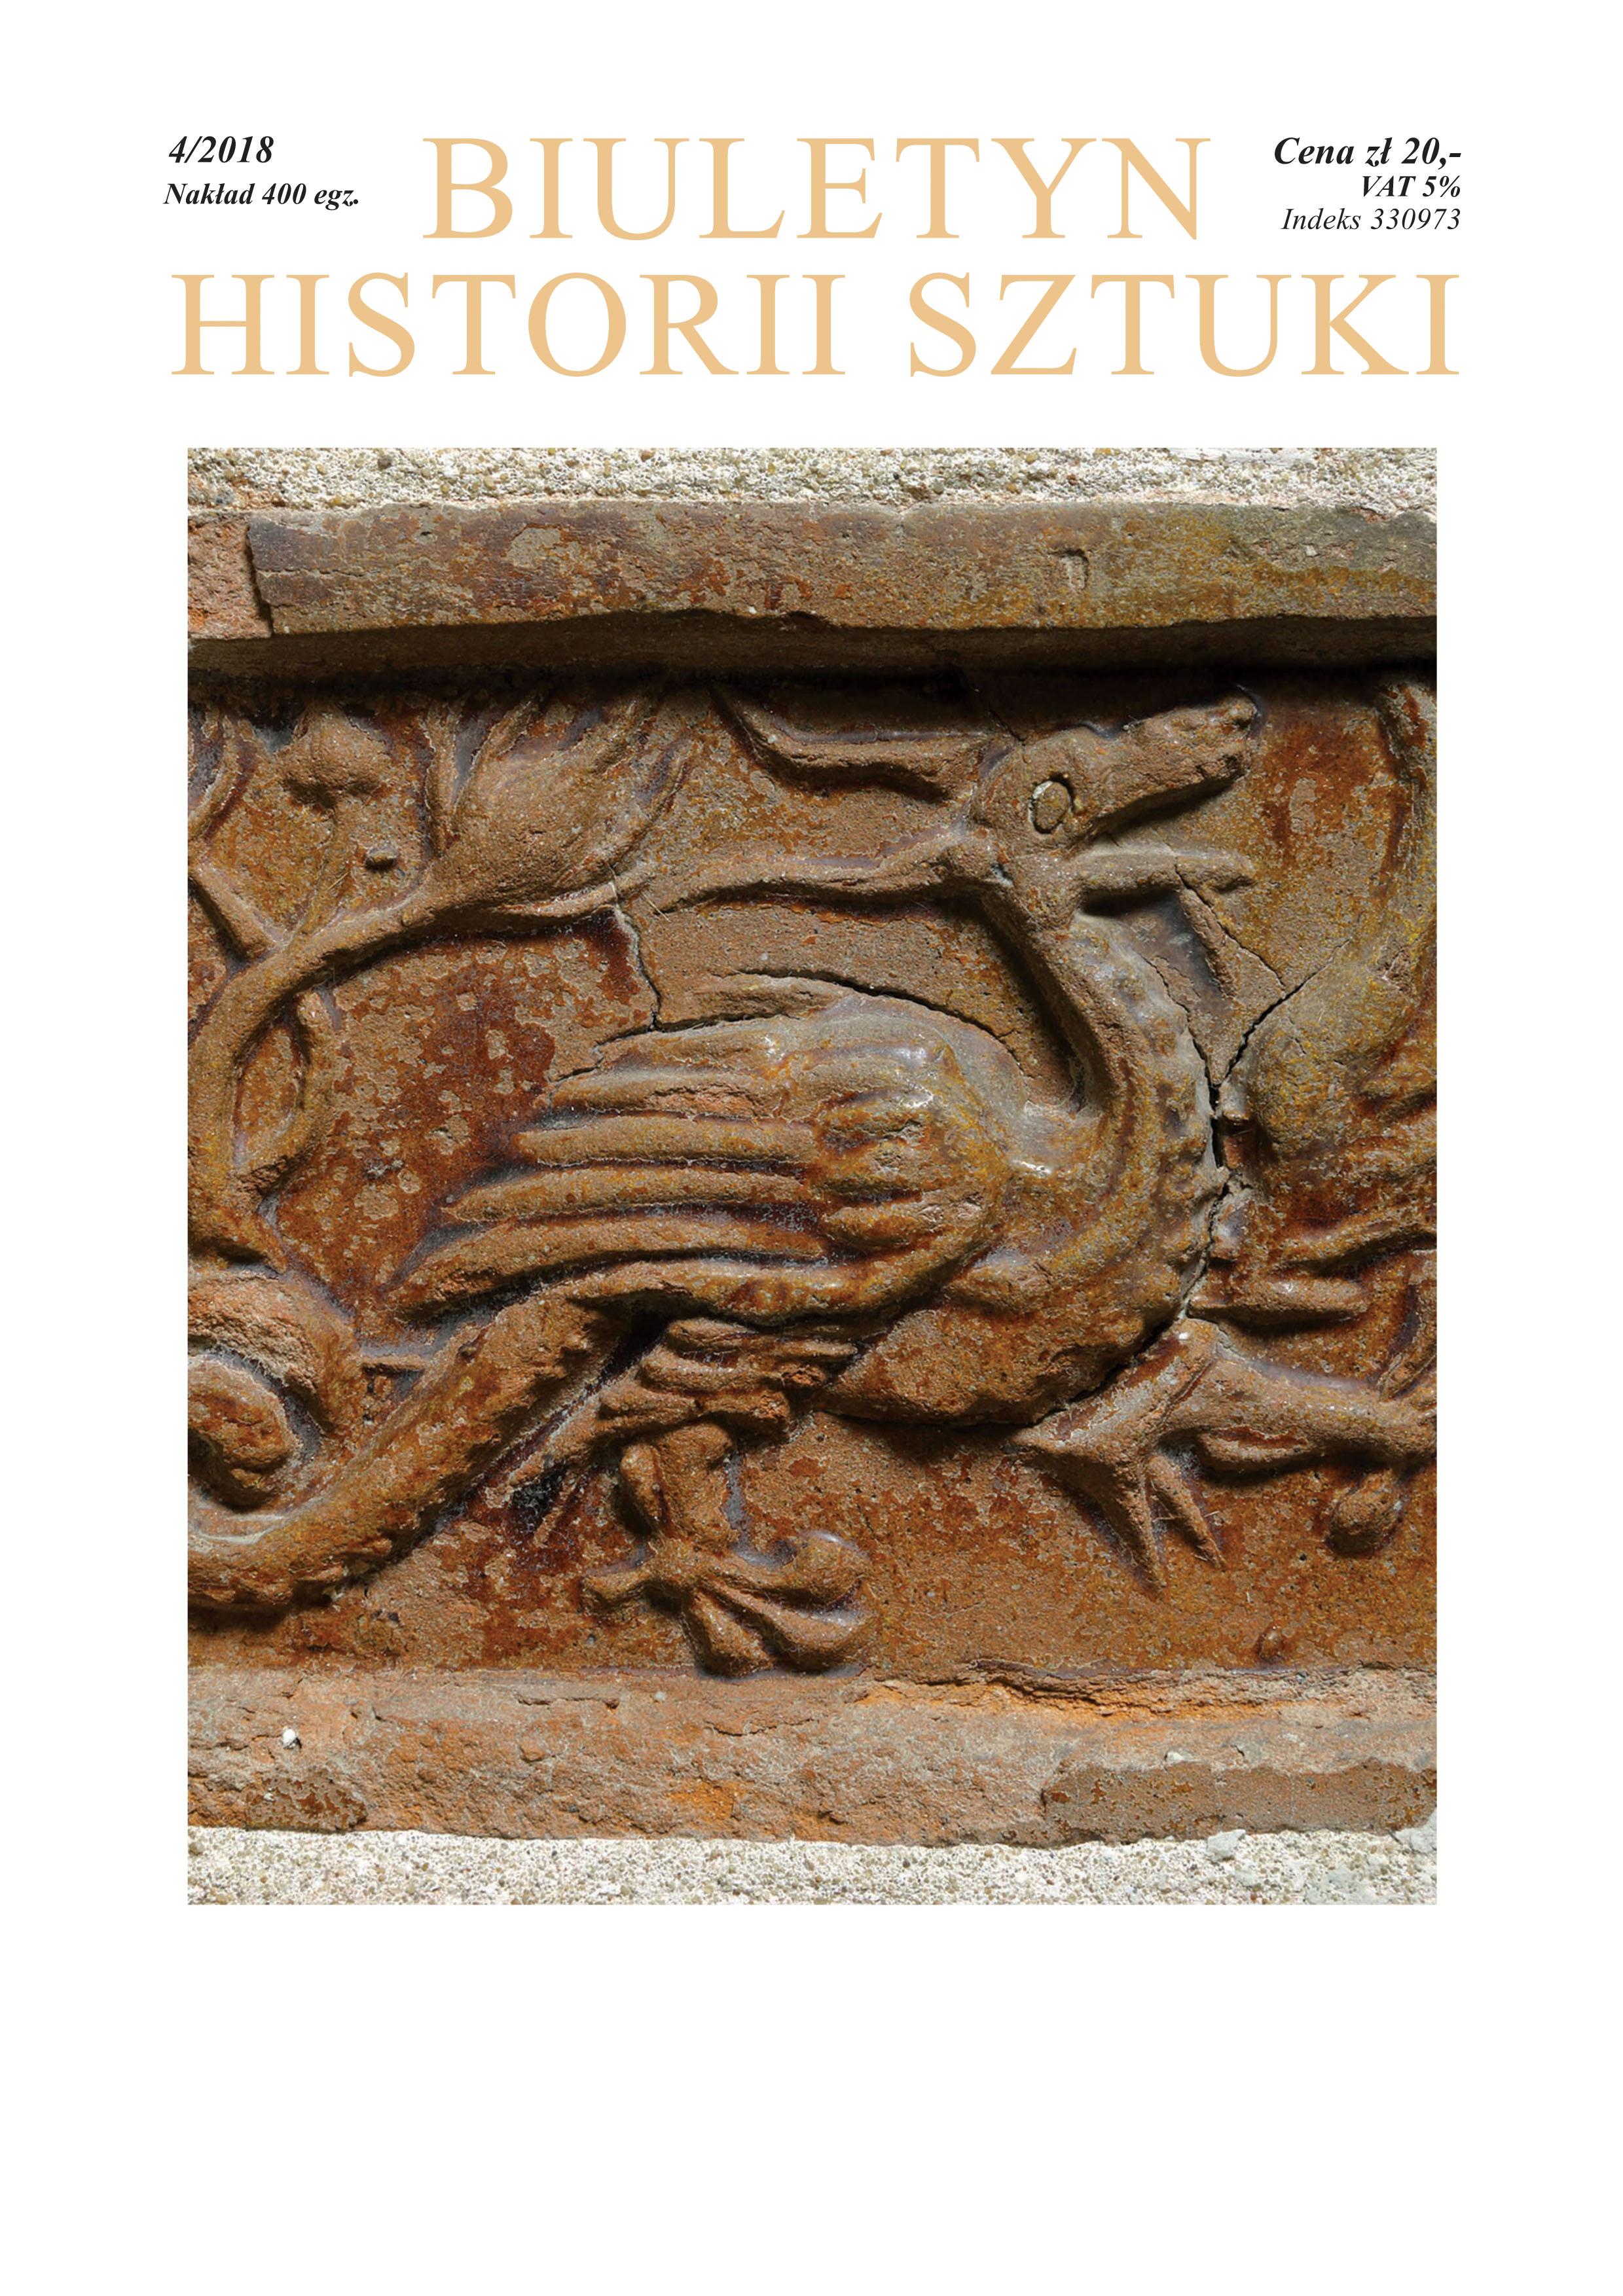 ‘Pomniki w epoce antropocenu’, [‘Monuments in the Anthropocene Epoch’], ed. Małgorzata Praczyk, Poznań 2017 Cover Image